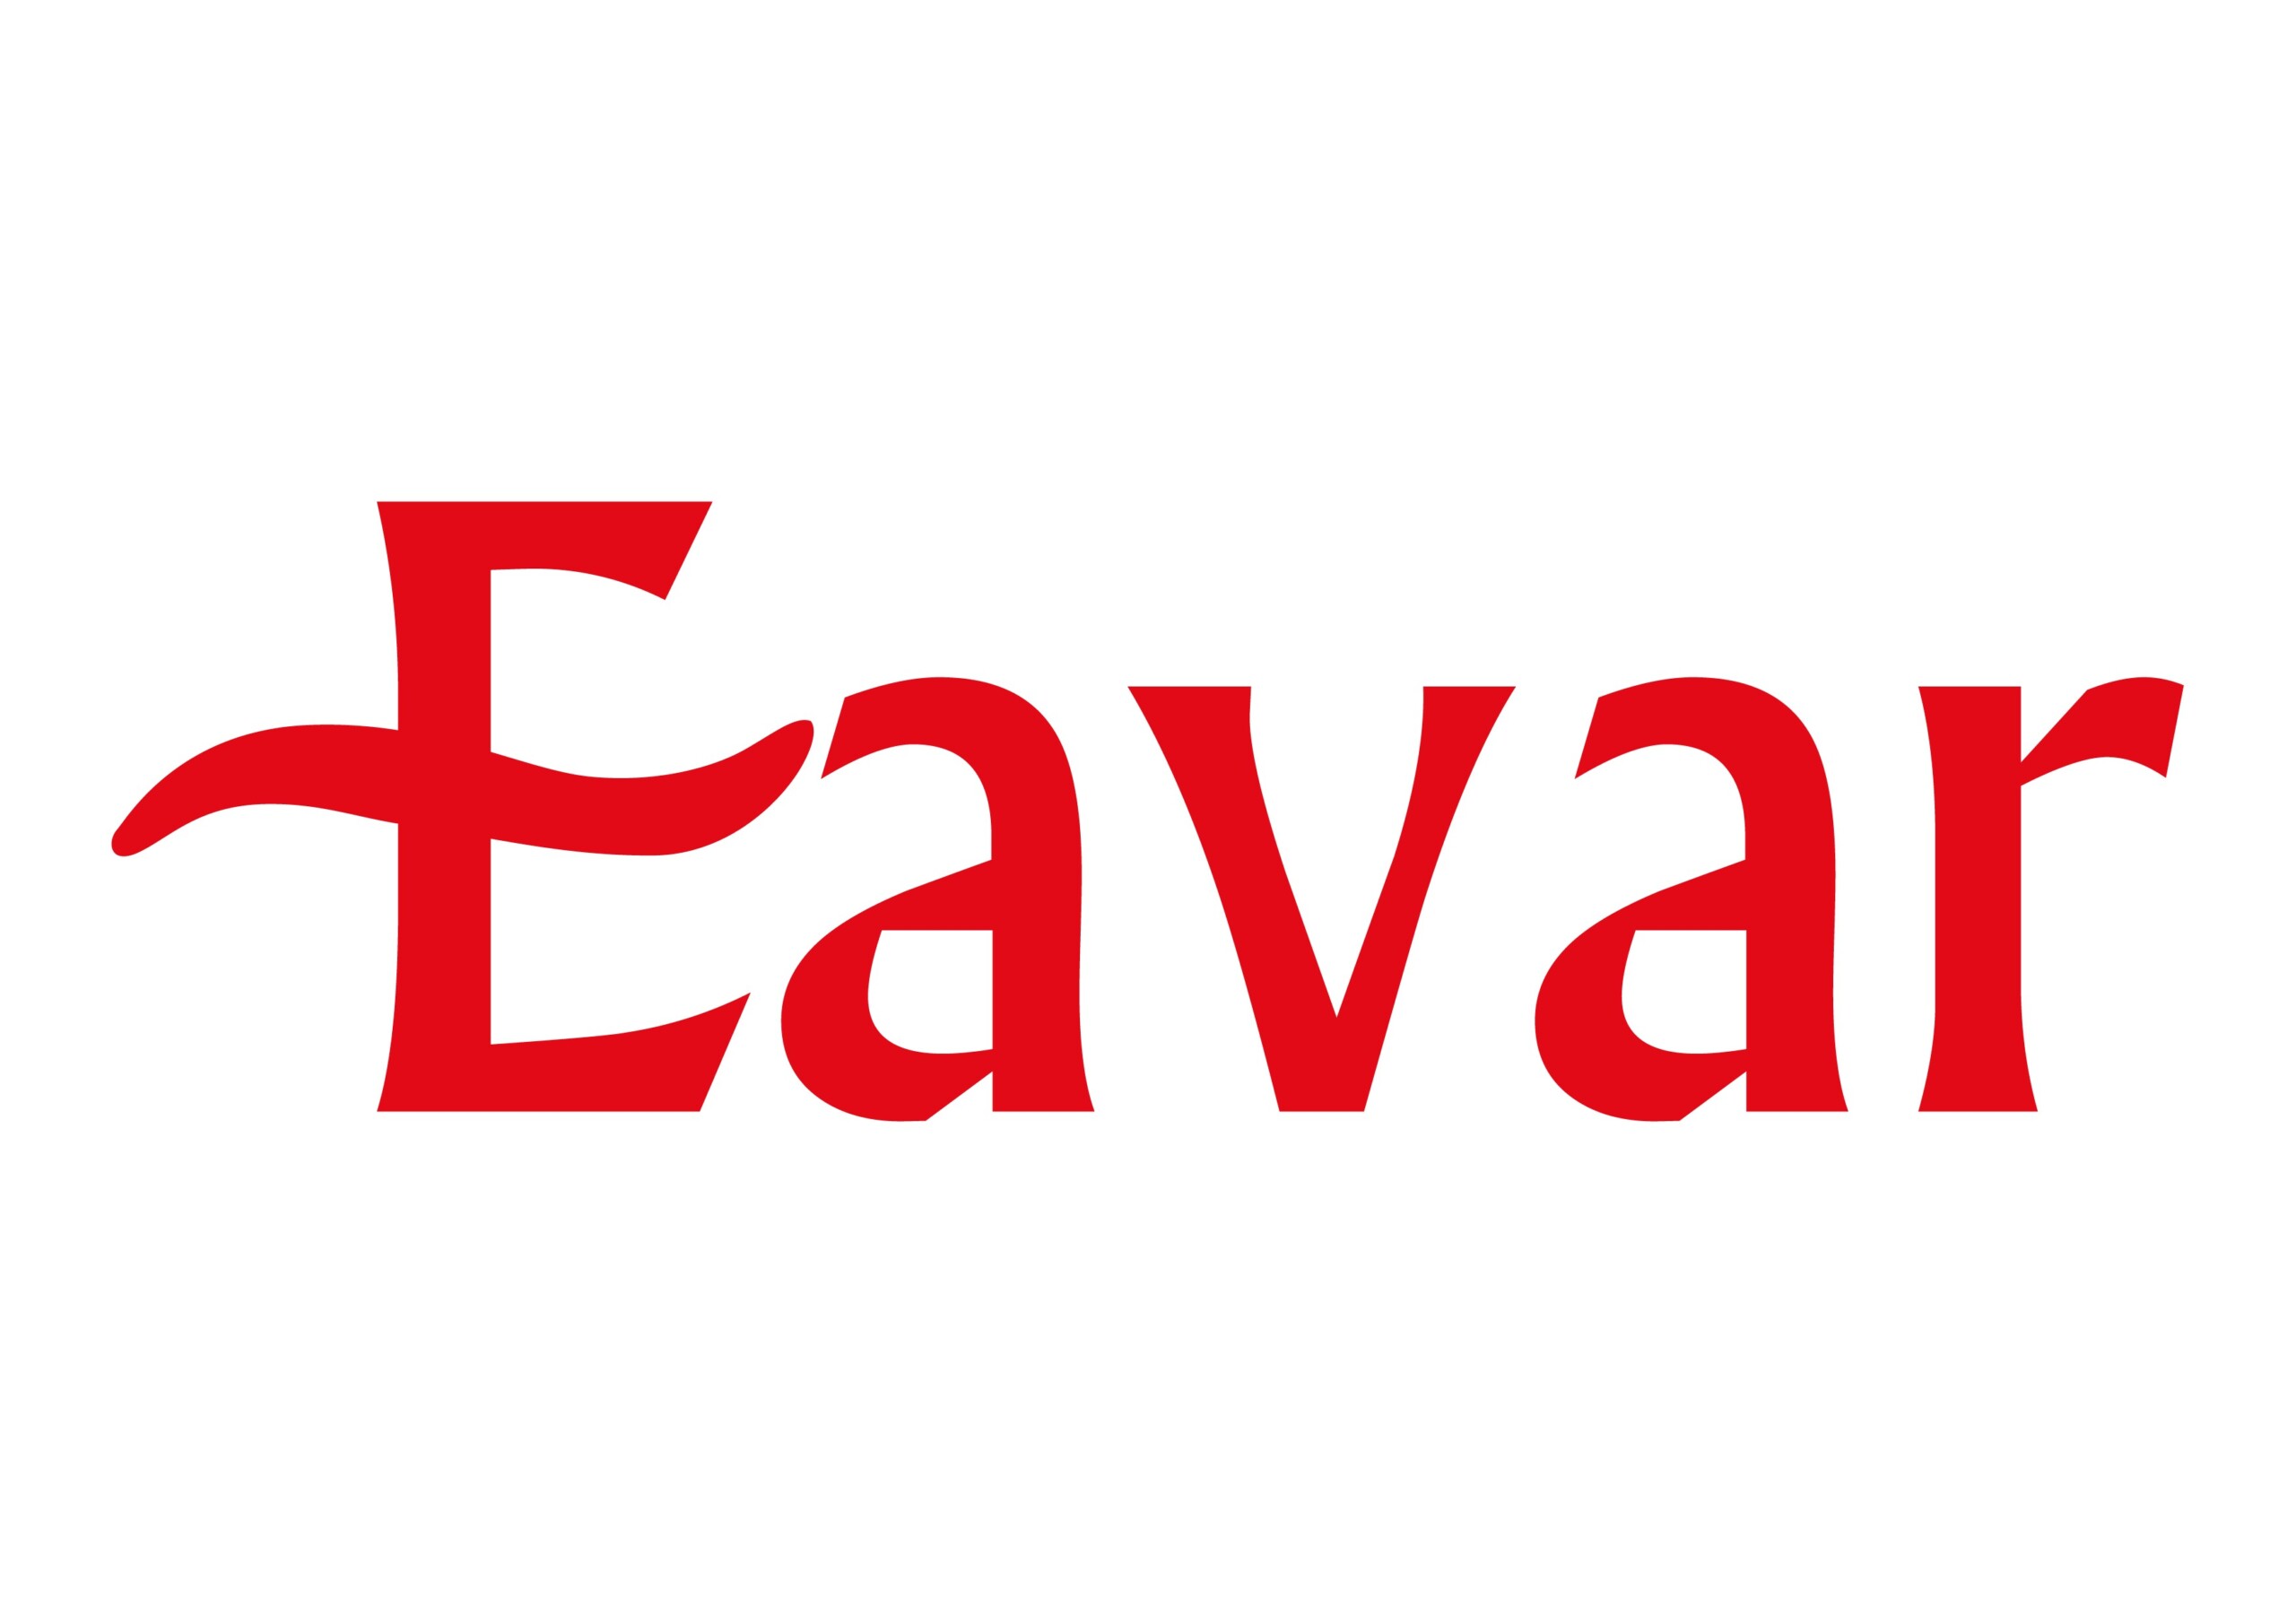 Eavar Travel Logo scaled